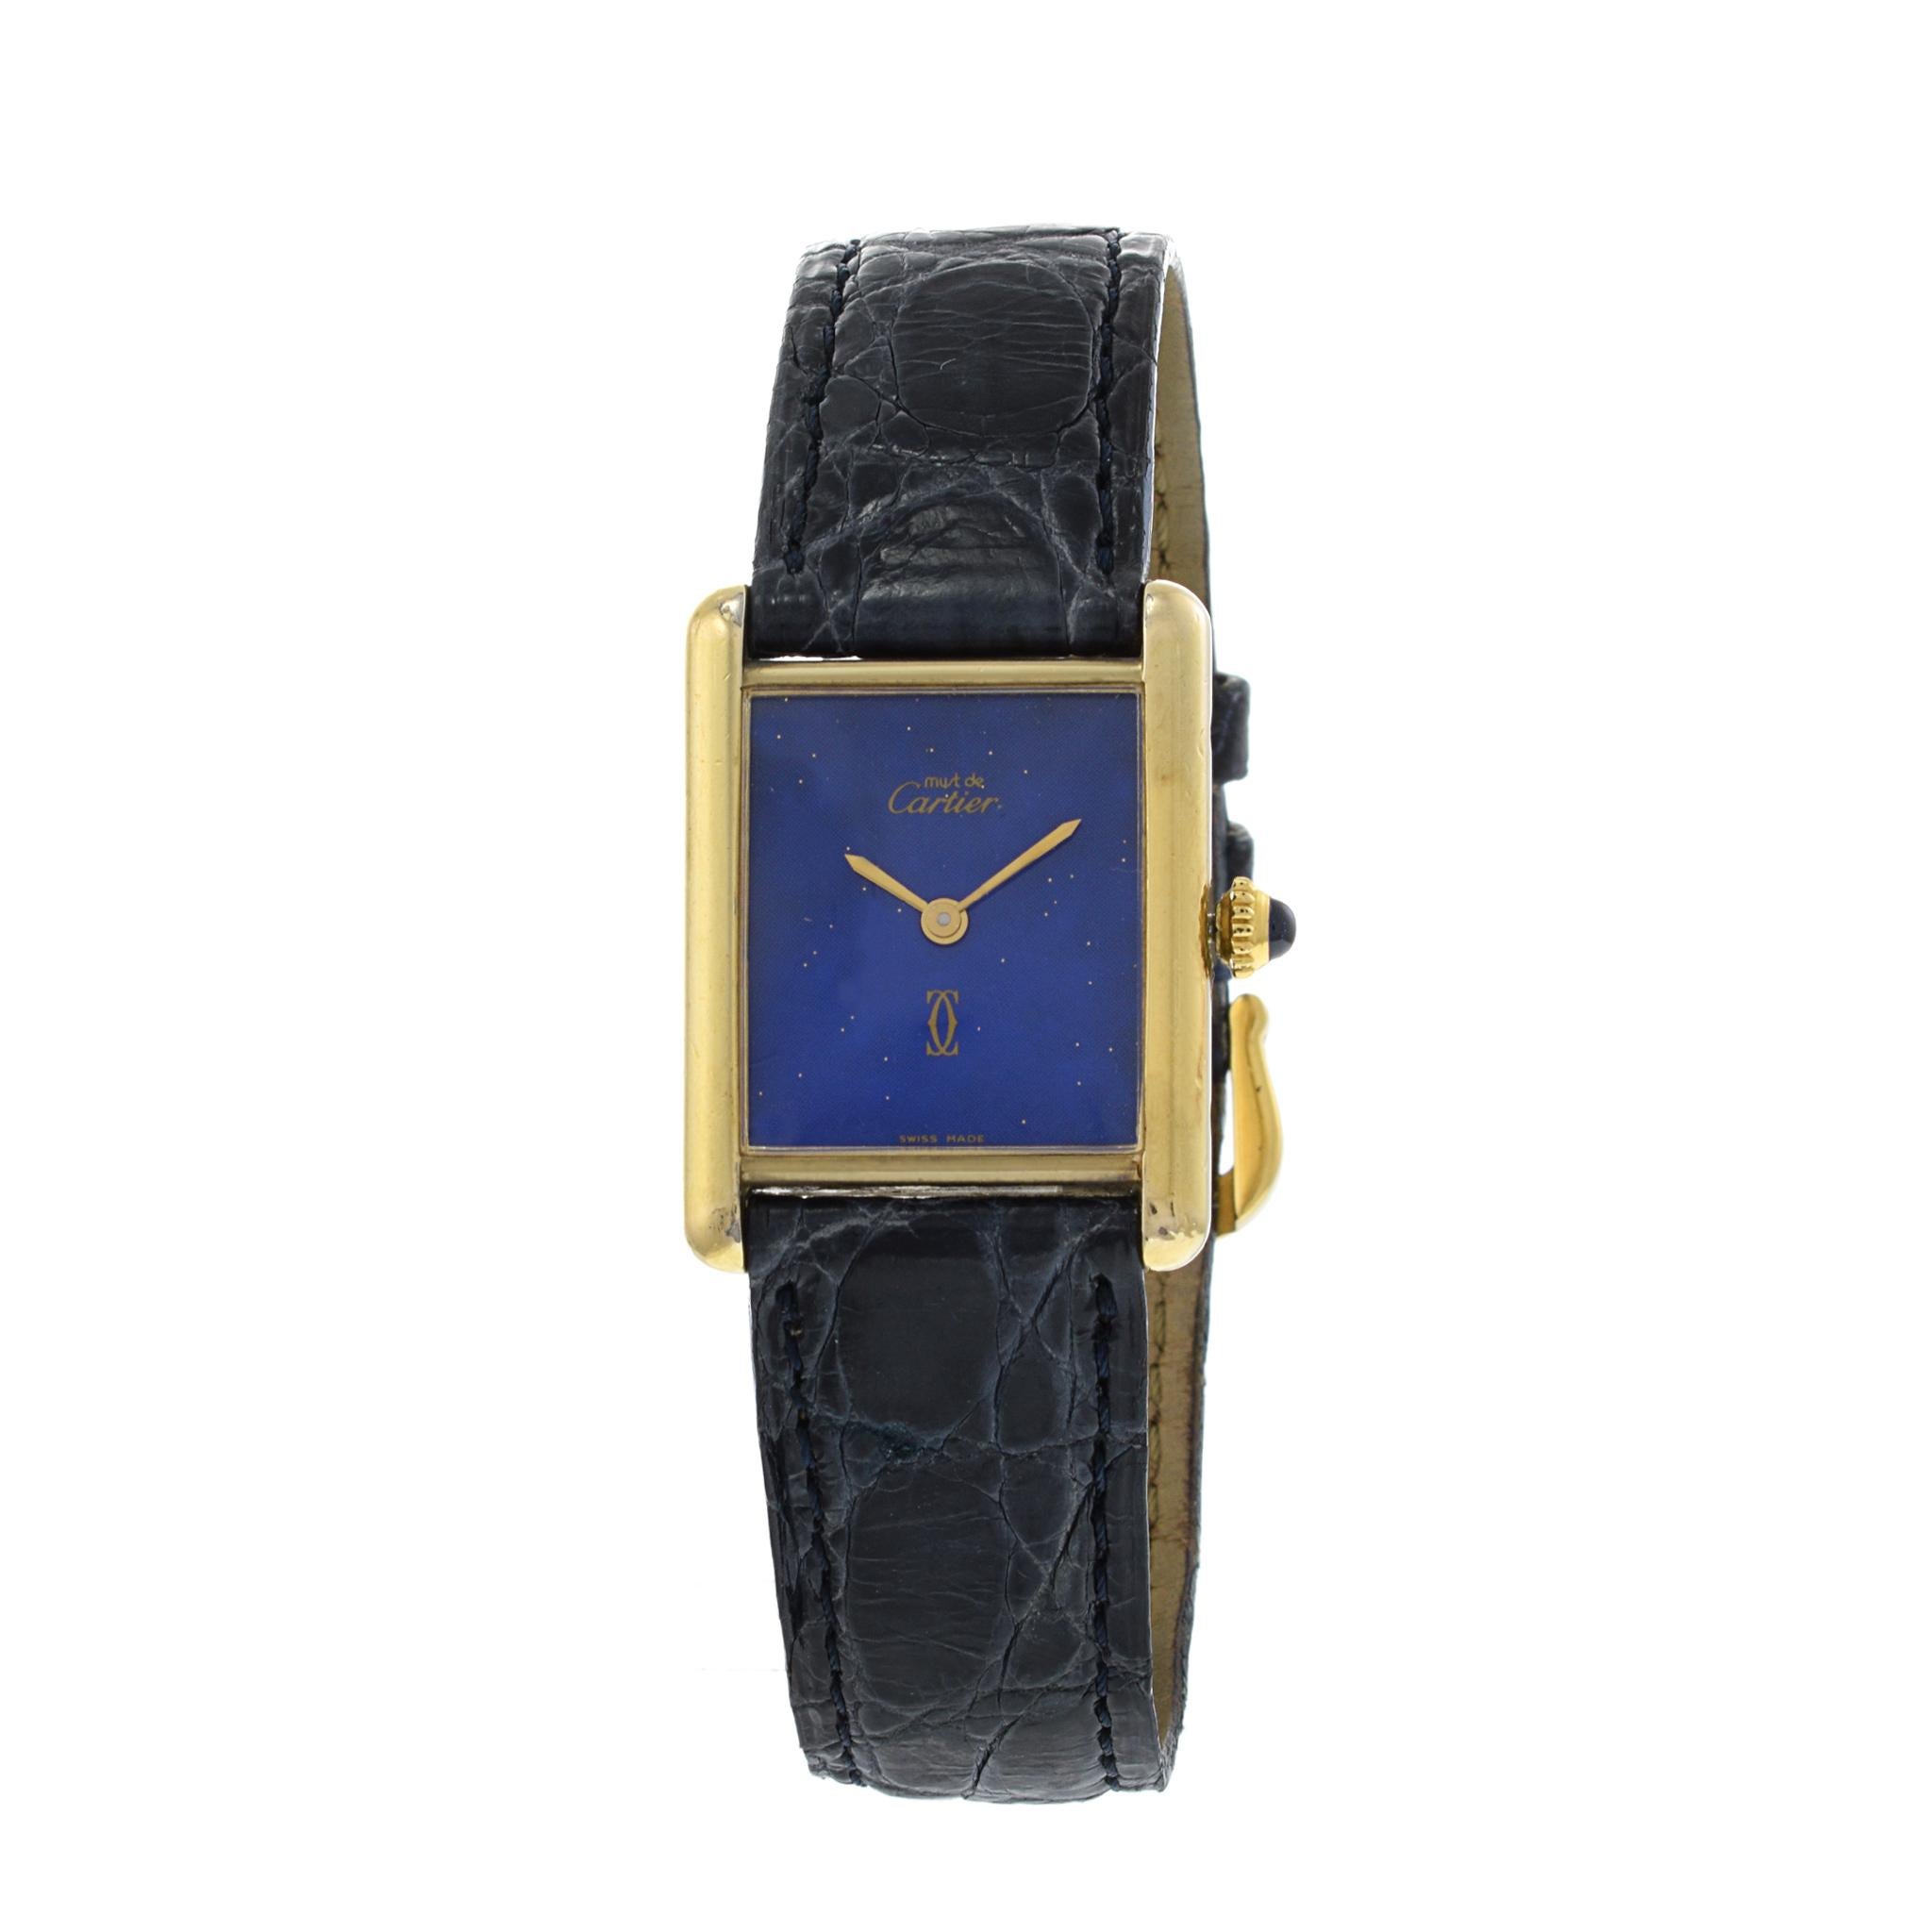 Wir stellen die Cartier Tank Vermeil Uhr vor: Zeitlose Eleganz.

Die Cartier Tank Vermeil Uhr ist der Inbegriff von raffiniertem Luxus. Dieser kultige Zeitmesser aus den 1970er Jahren strahlt mit seinem schwarzen Zifferblatt zeitlose Raffinesse aus.